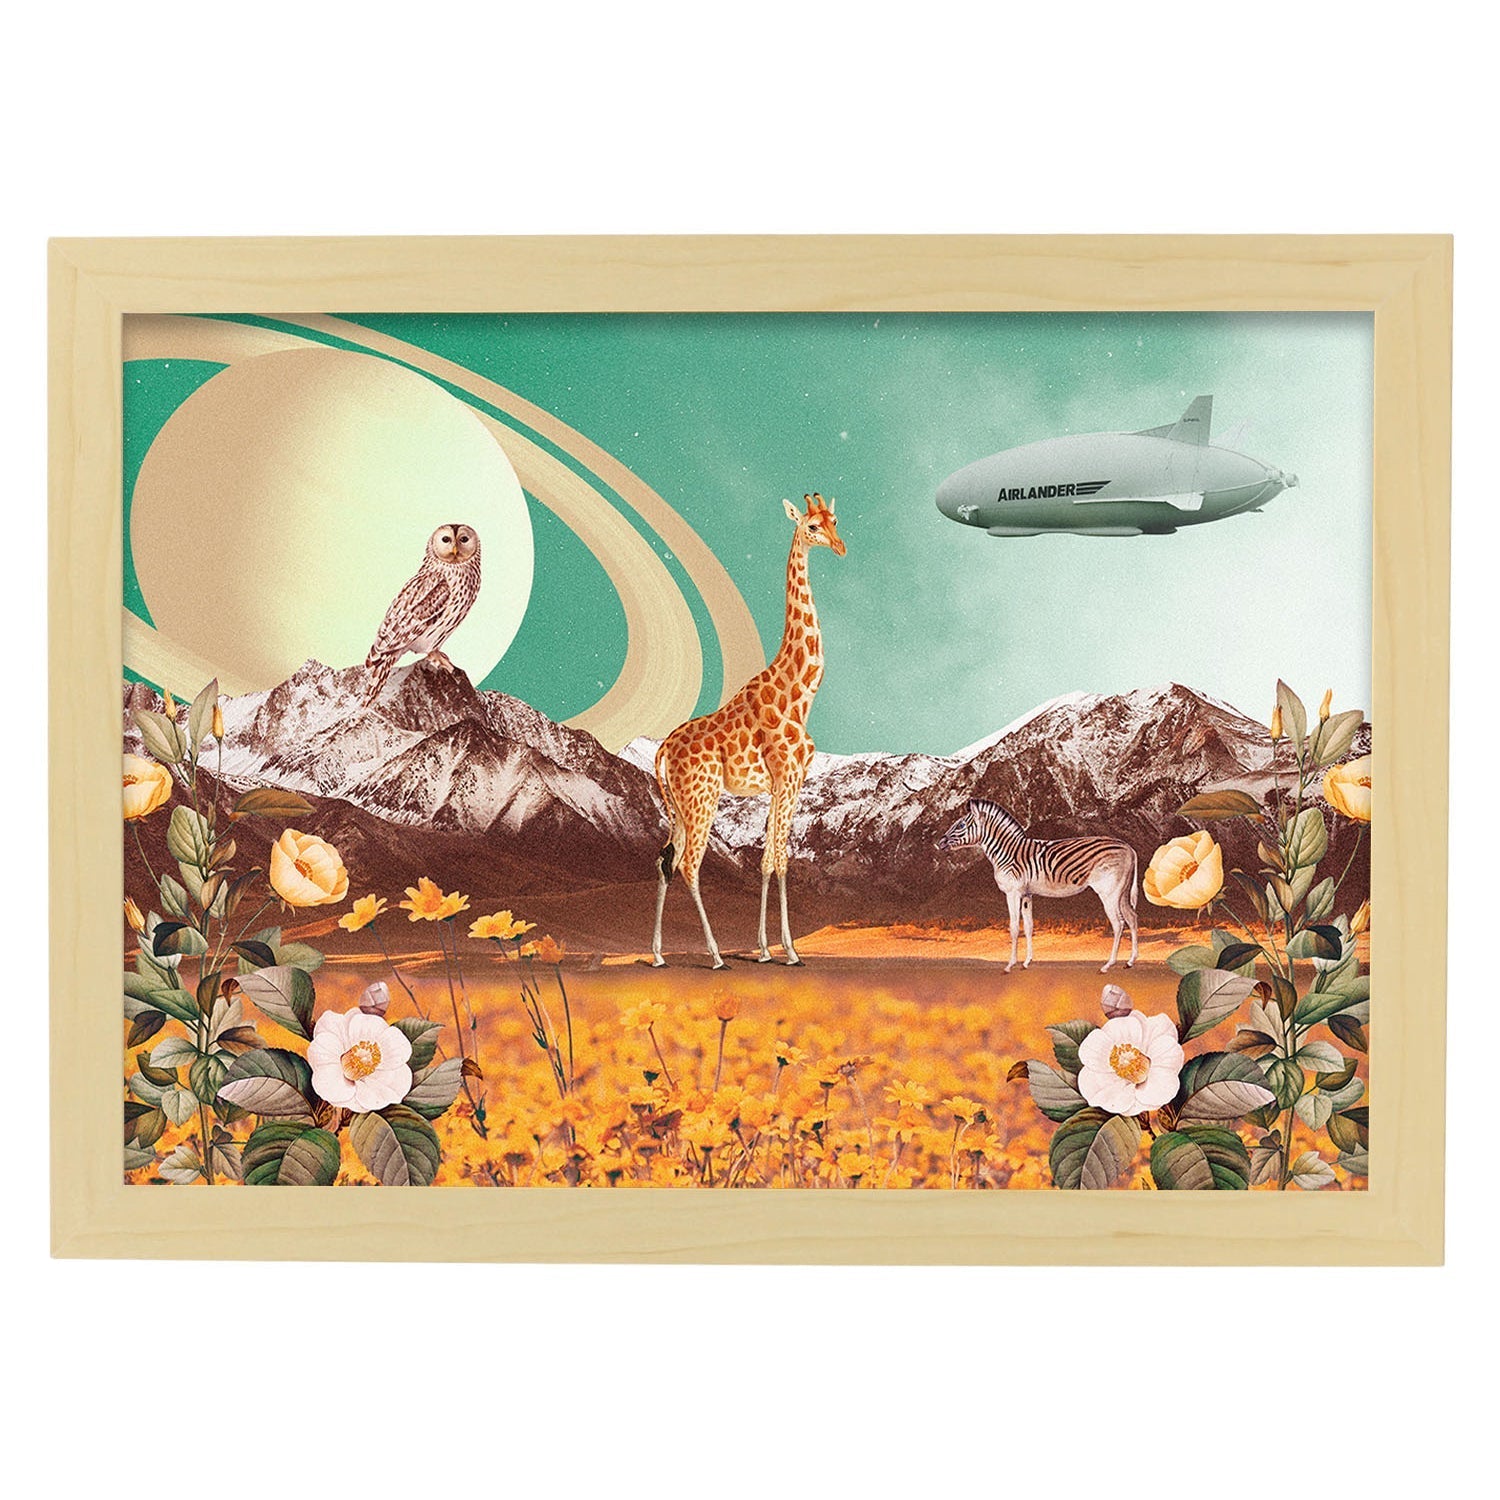 Lamina artistica decorativa con ilustración de Saturn estilo Collage-Artwork-Nacnic-A3-Marco Madera clara-Nacnic Estudio SL